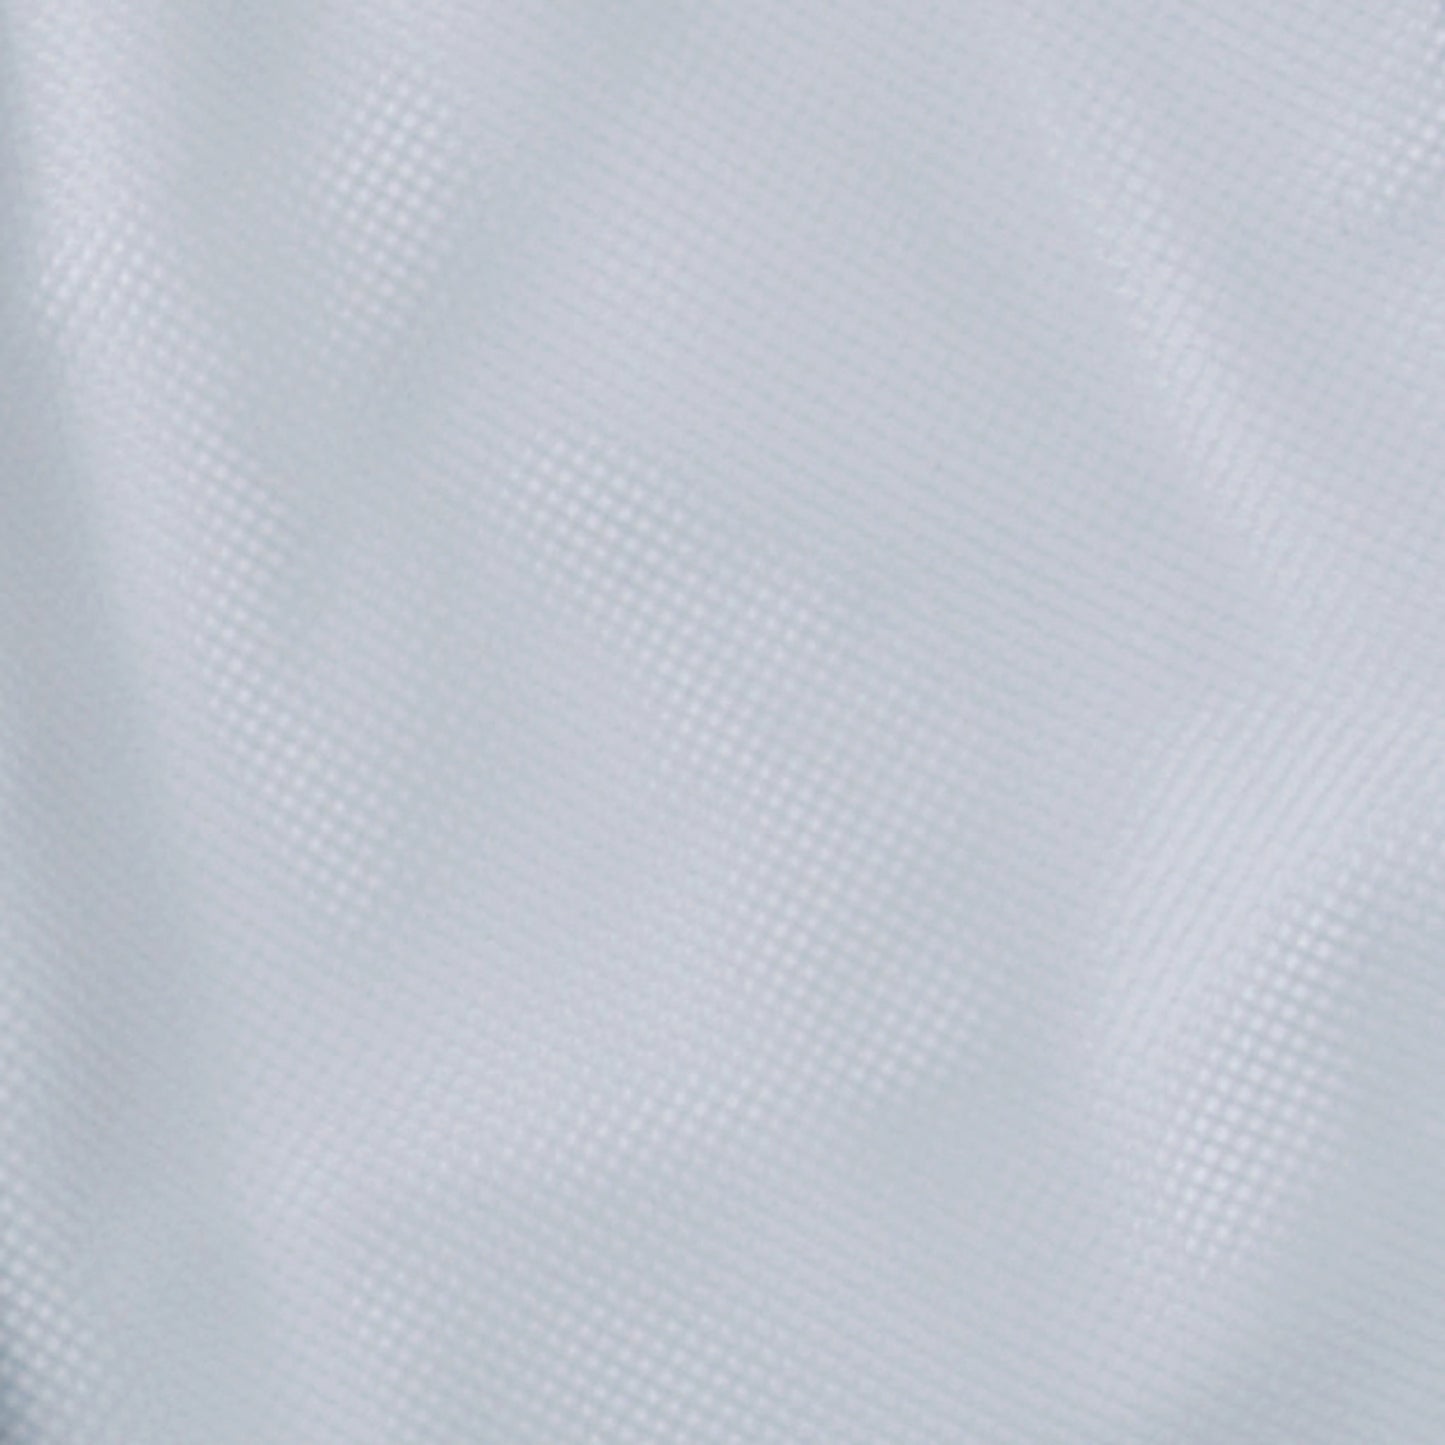 サンエス 食品工場用白衣 フードマイスター ウエストサイド ゴム仕様 女性用白衣 【女性用 横ゴム・裾口ストレートパンツ】 FX70978